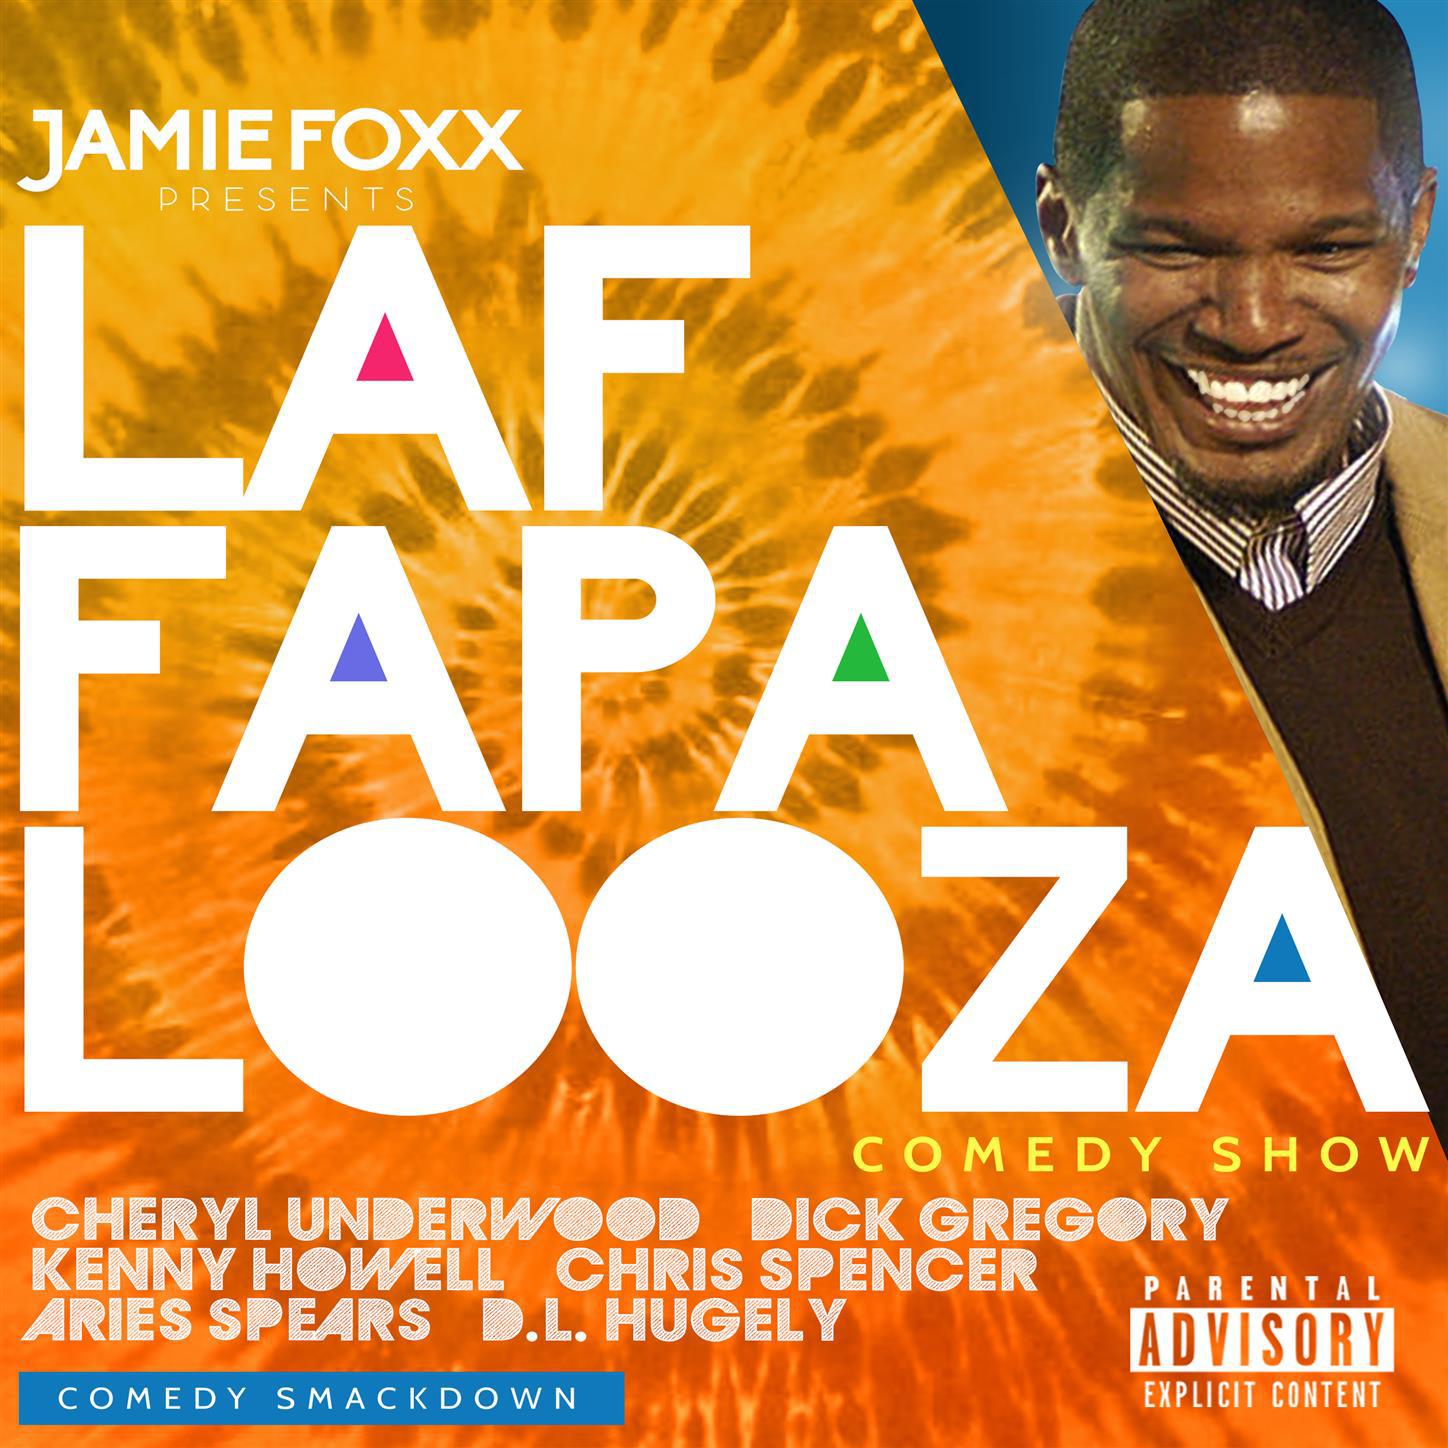 Jamie Foxx Presents Laffapalooza Comedy Smack Down